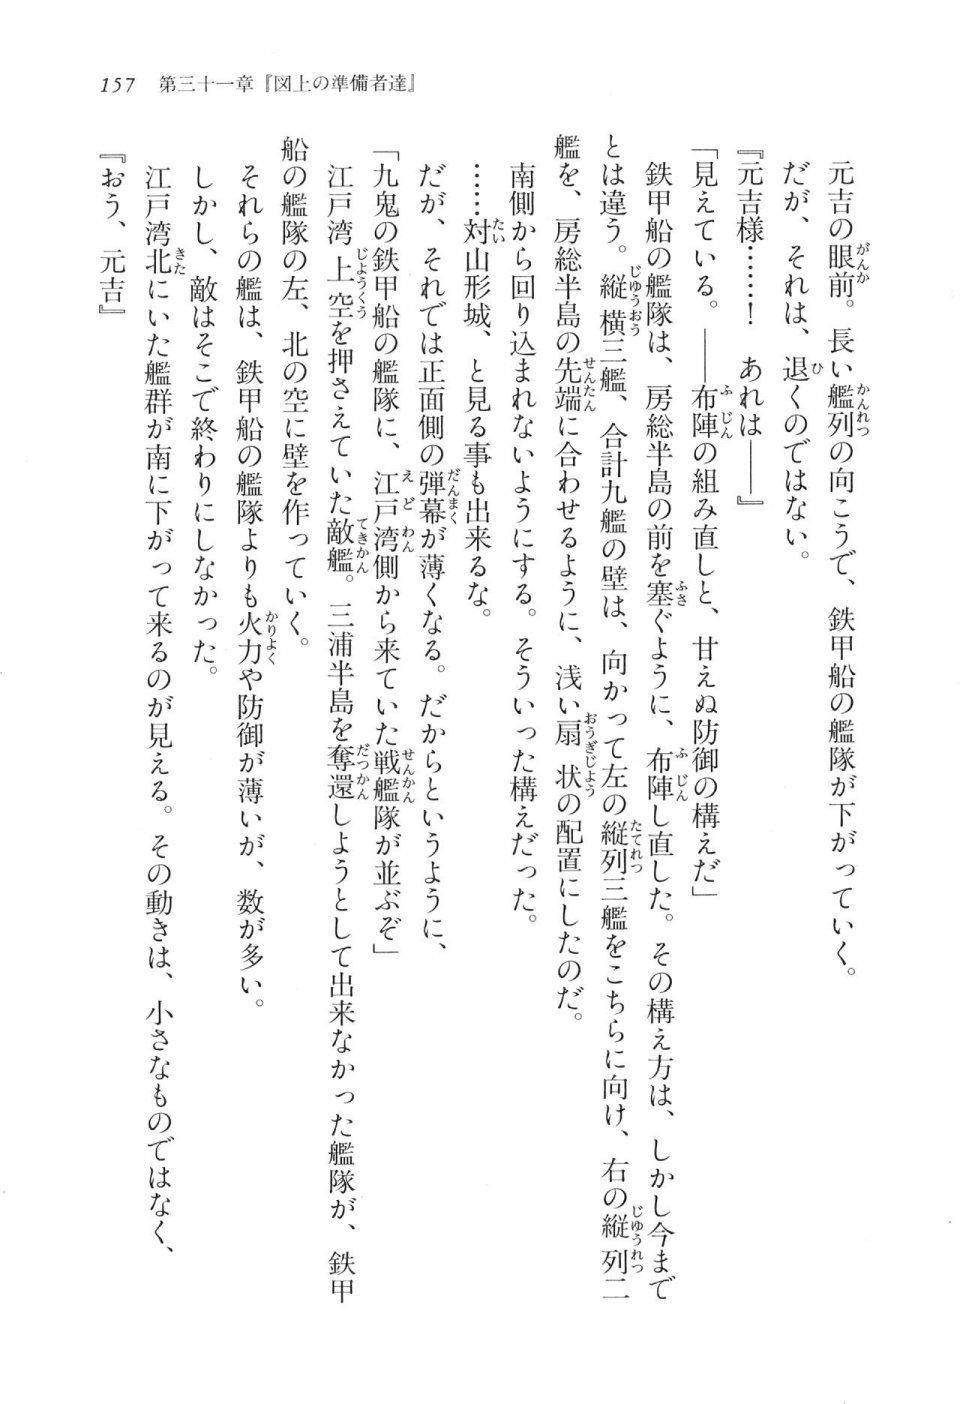 Kyoukai Senjou no Horizon LN Vol 17(7B) - Photo #157